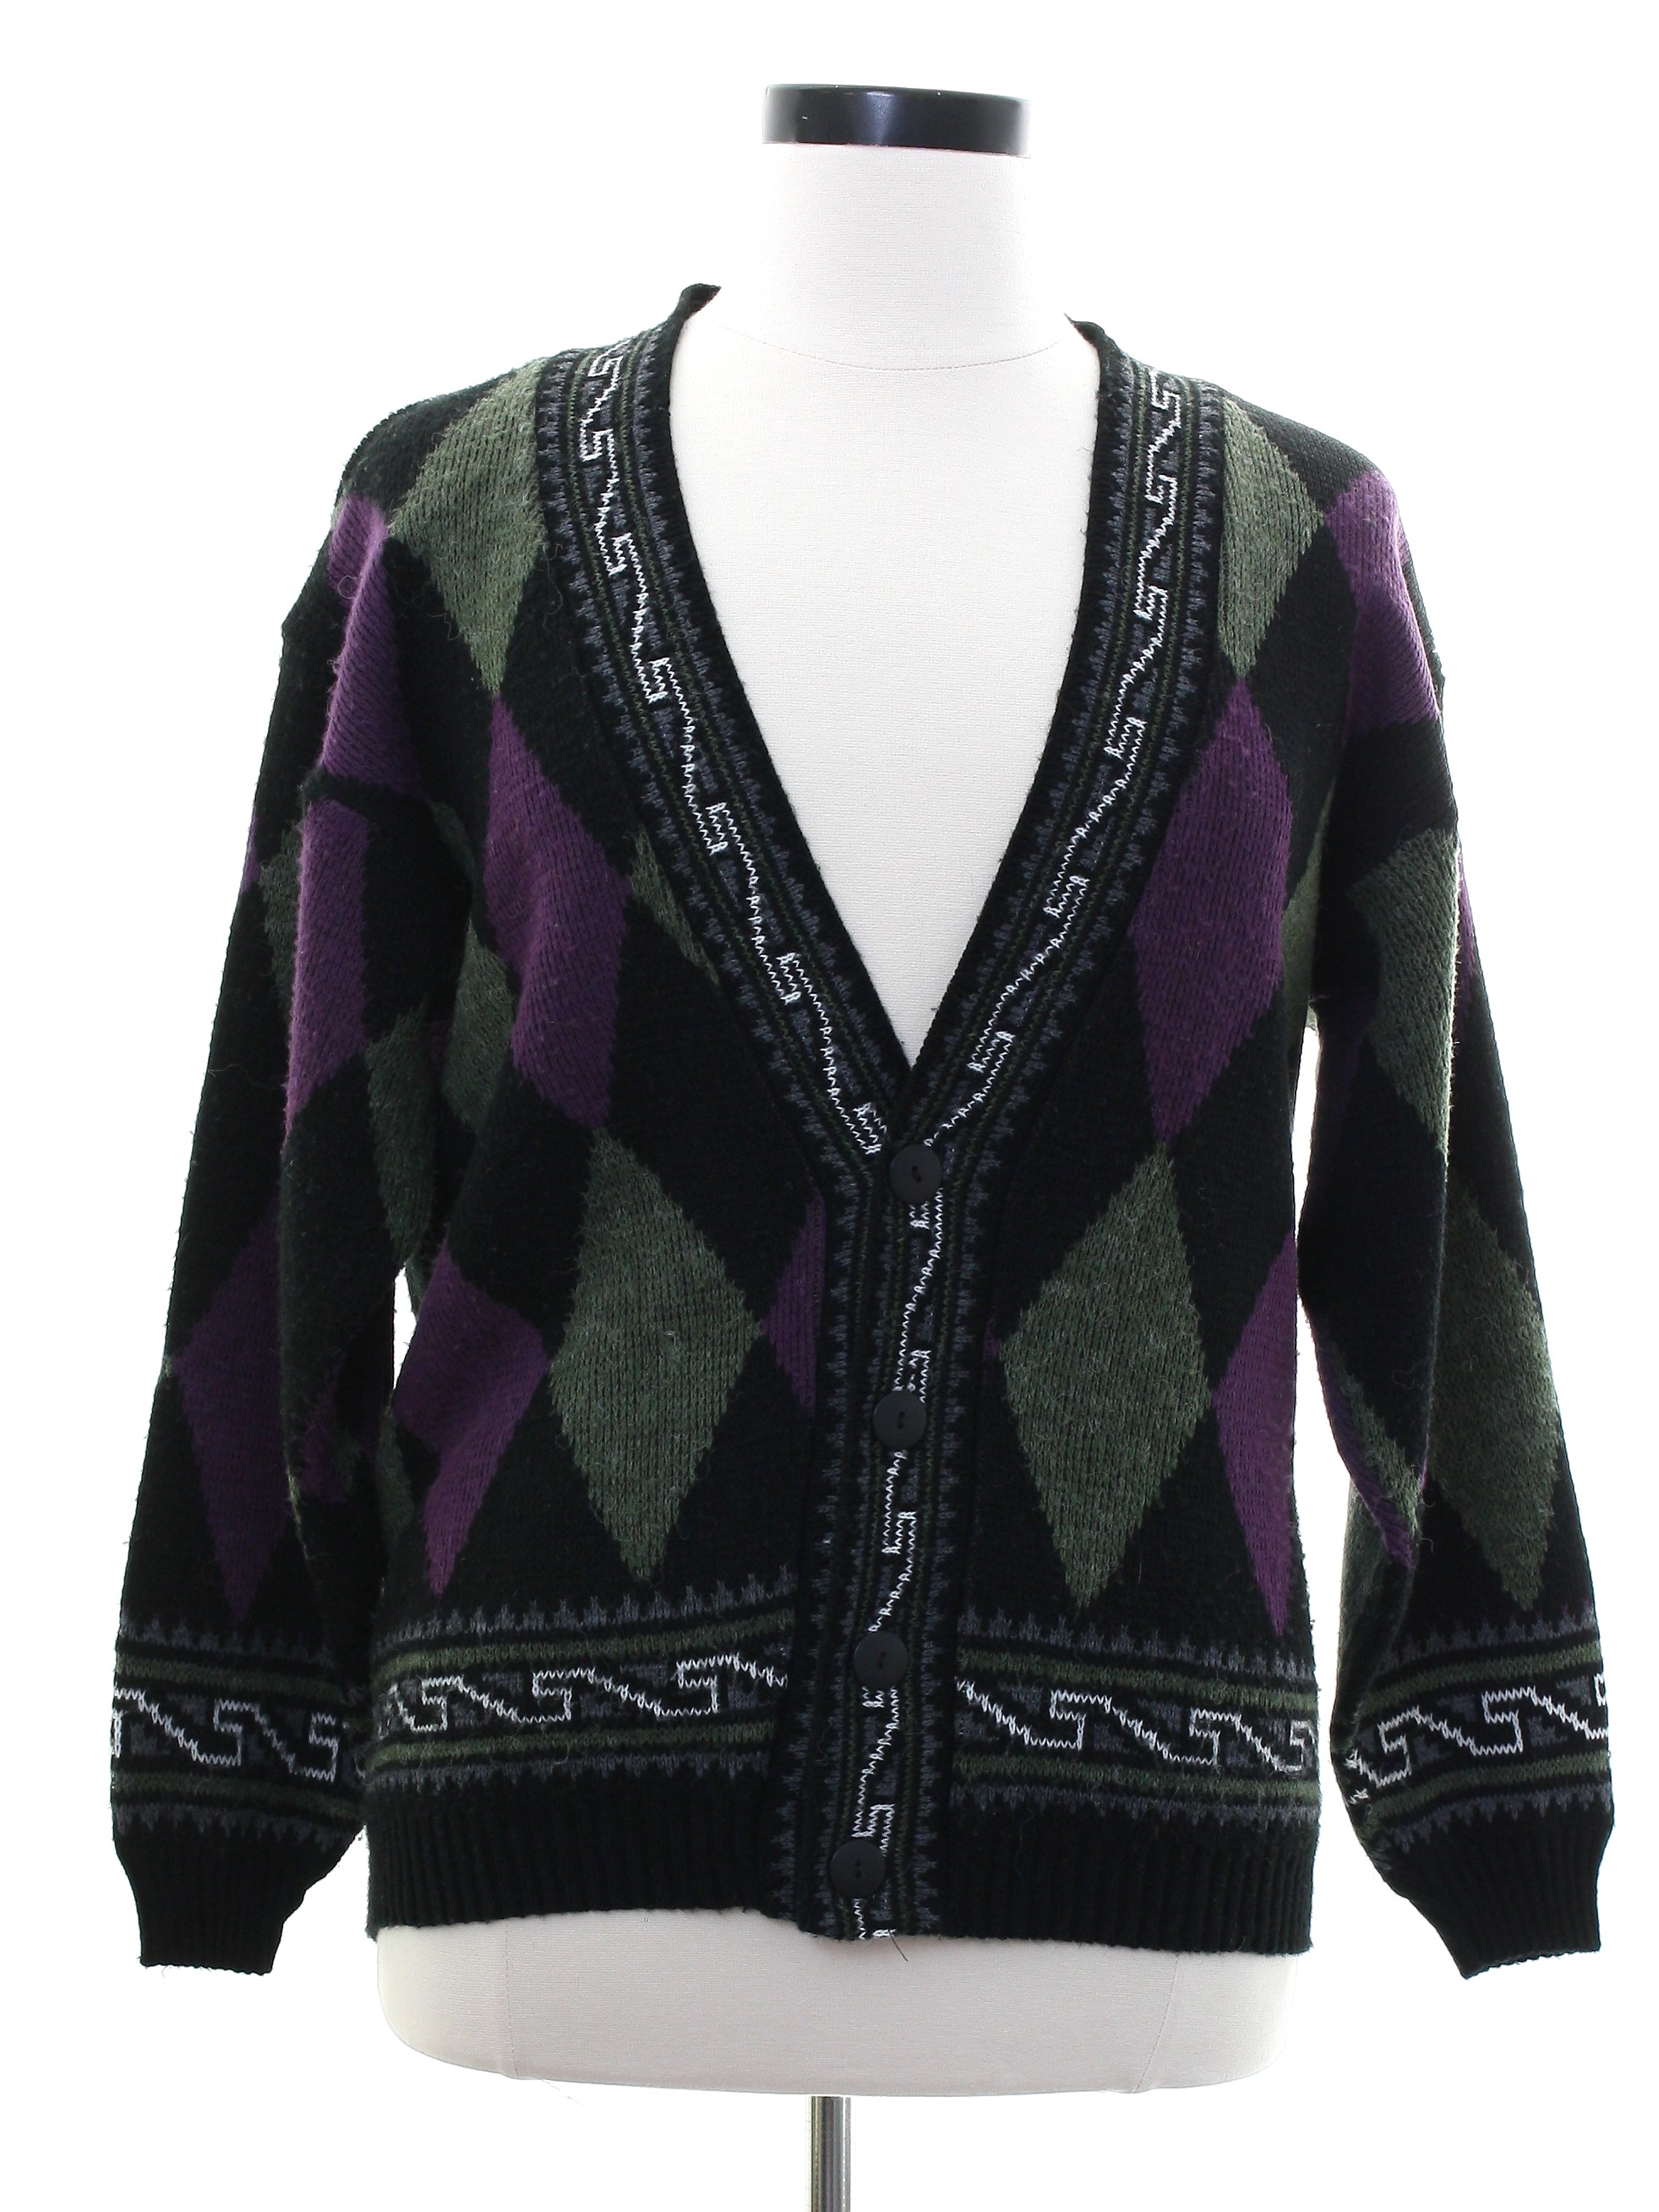 Vintage Adele Knitwear 1980s Caridgan Sweater: 80s -Adele Knitwear ...